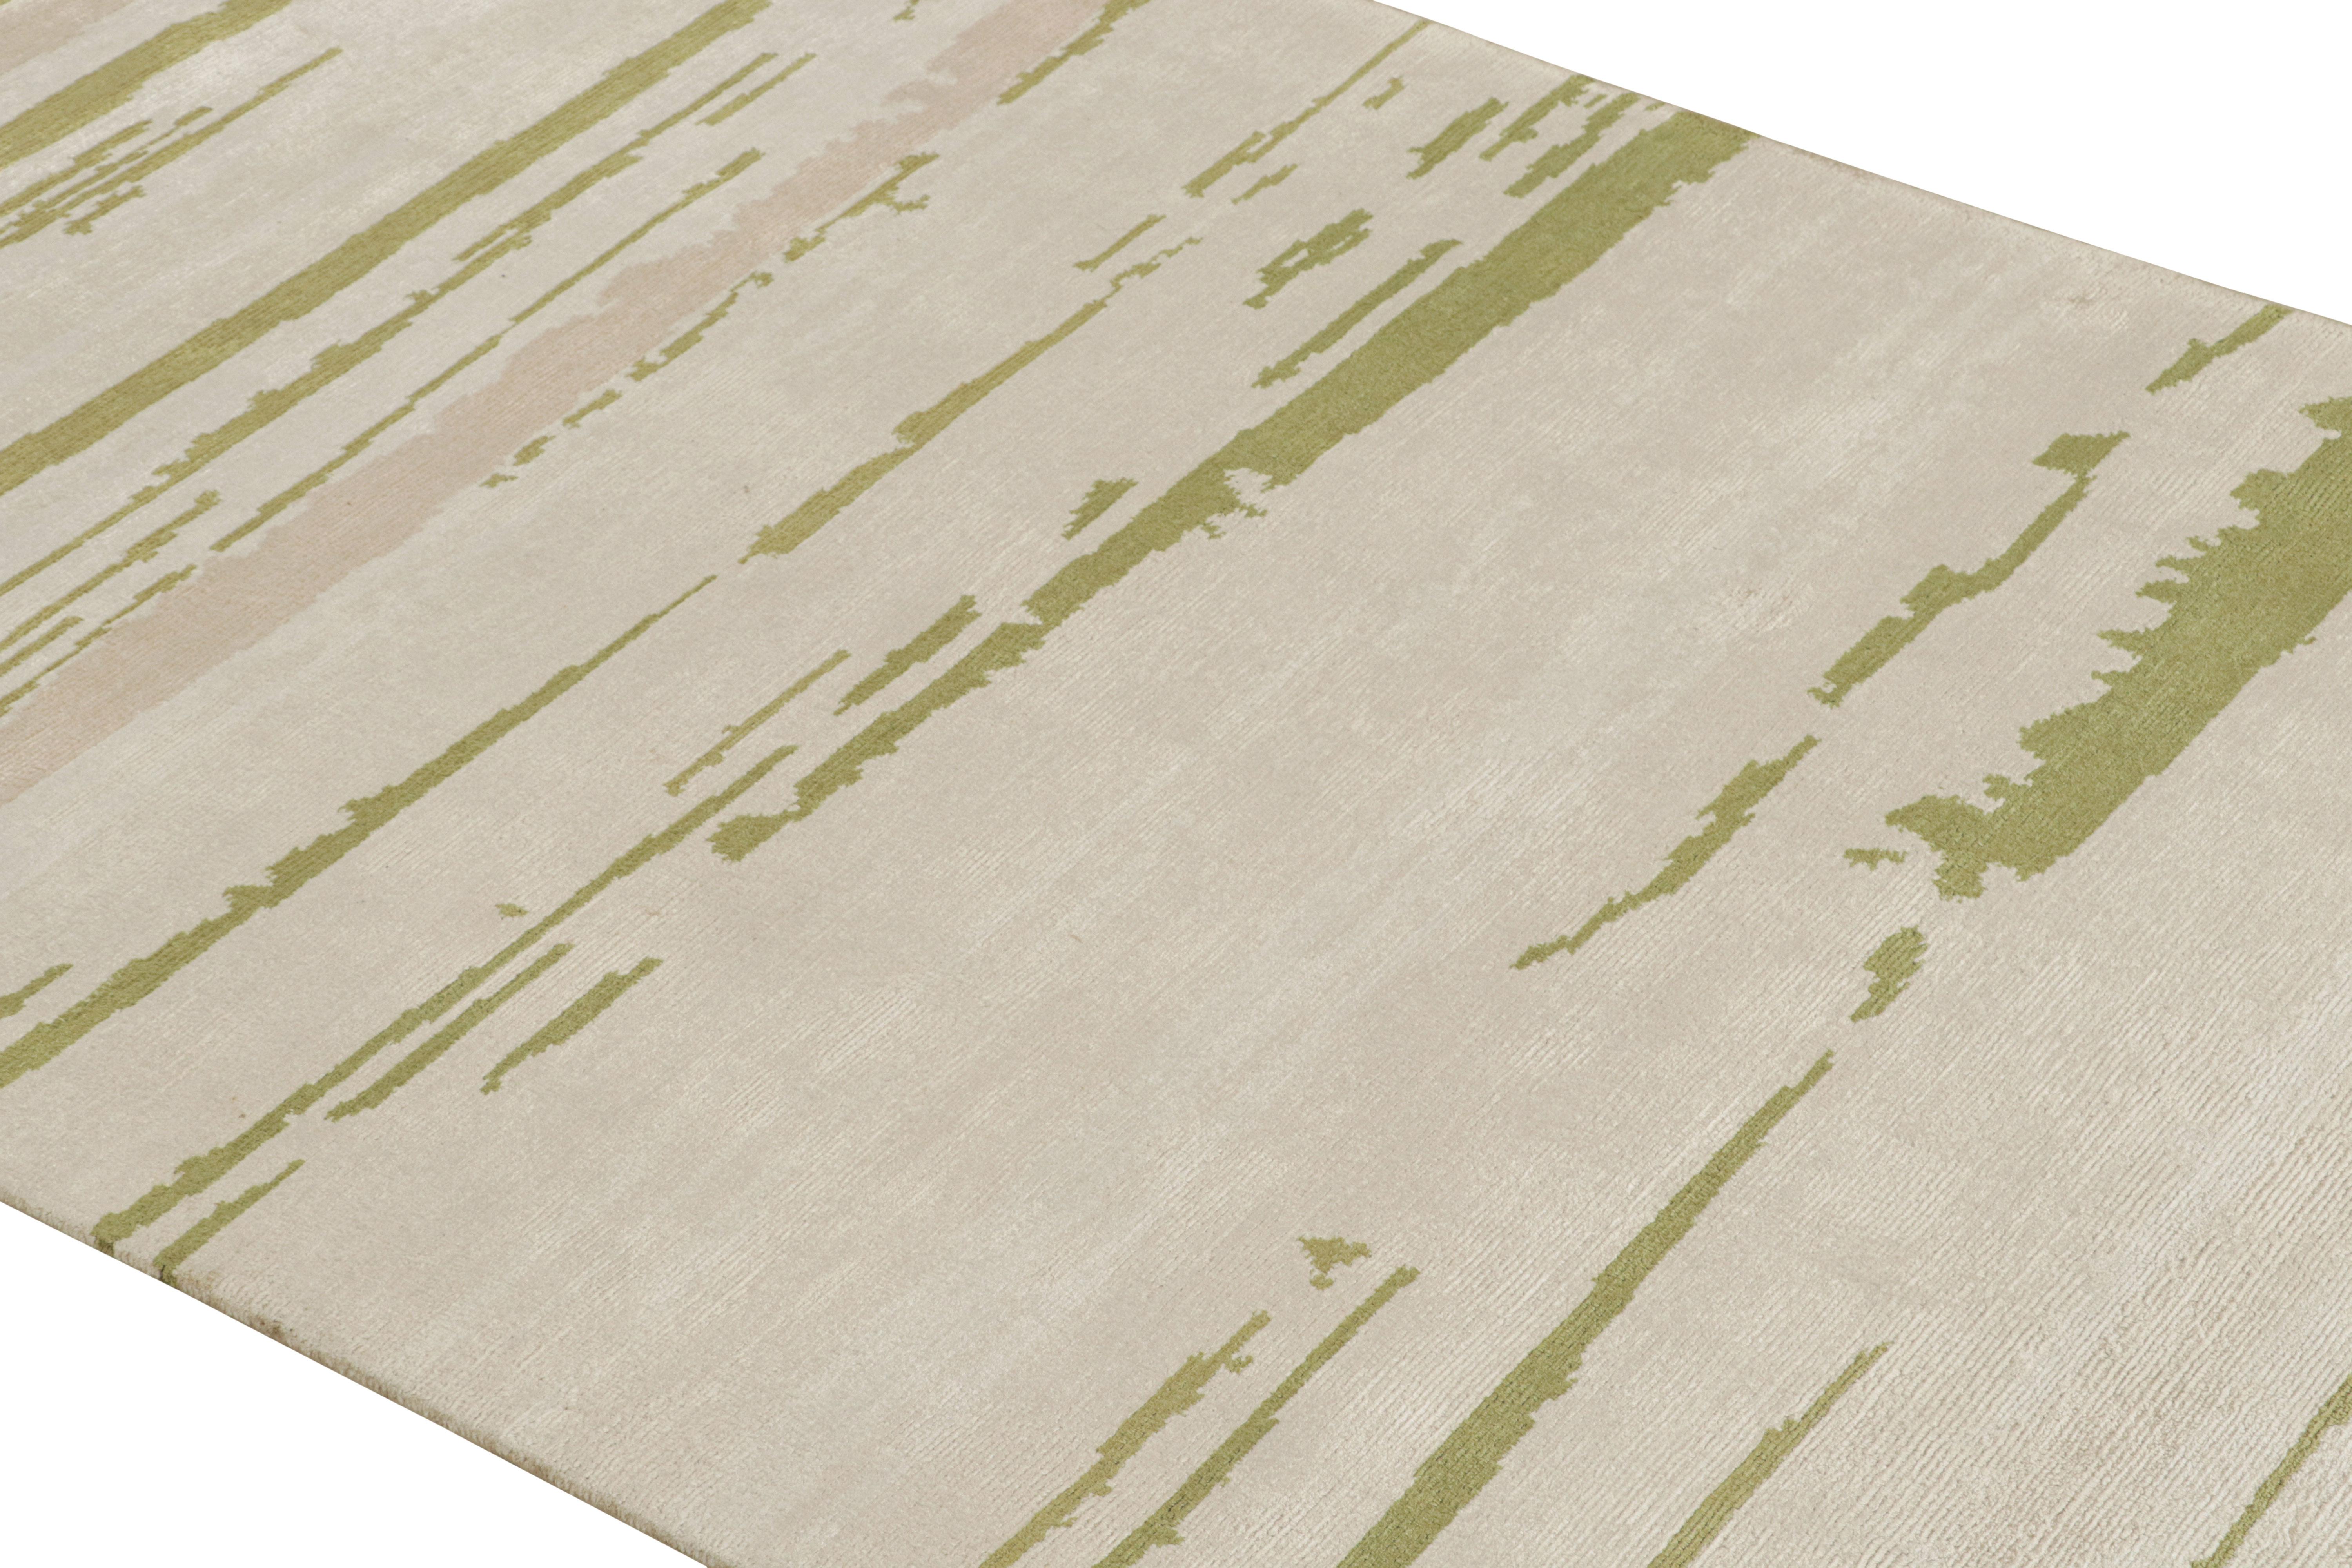 Noué à la main en laine et en soie, ce tapis de course moderne abstrait 3x10 présente des tons beige, rose pâle et vert chartreuse qui soulignent un jeu d'espaces négatifs et de motifs géométriques comme une peinture sur toile. 

Sur le Design :